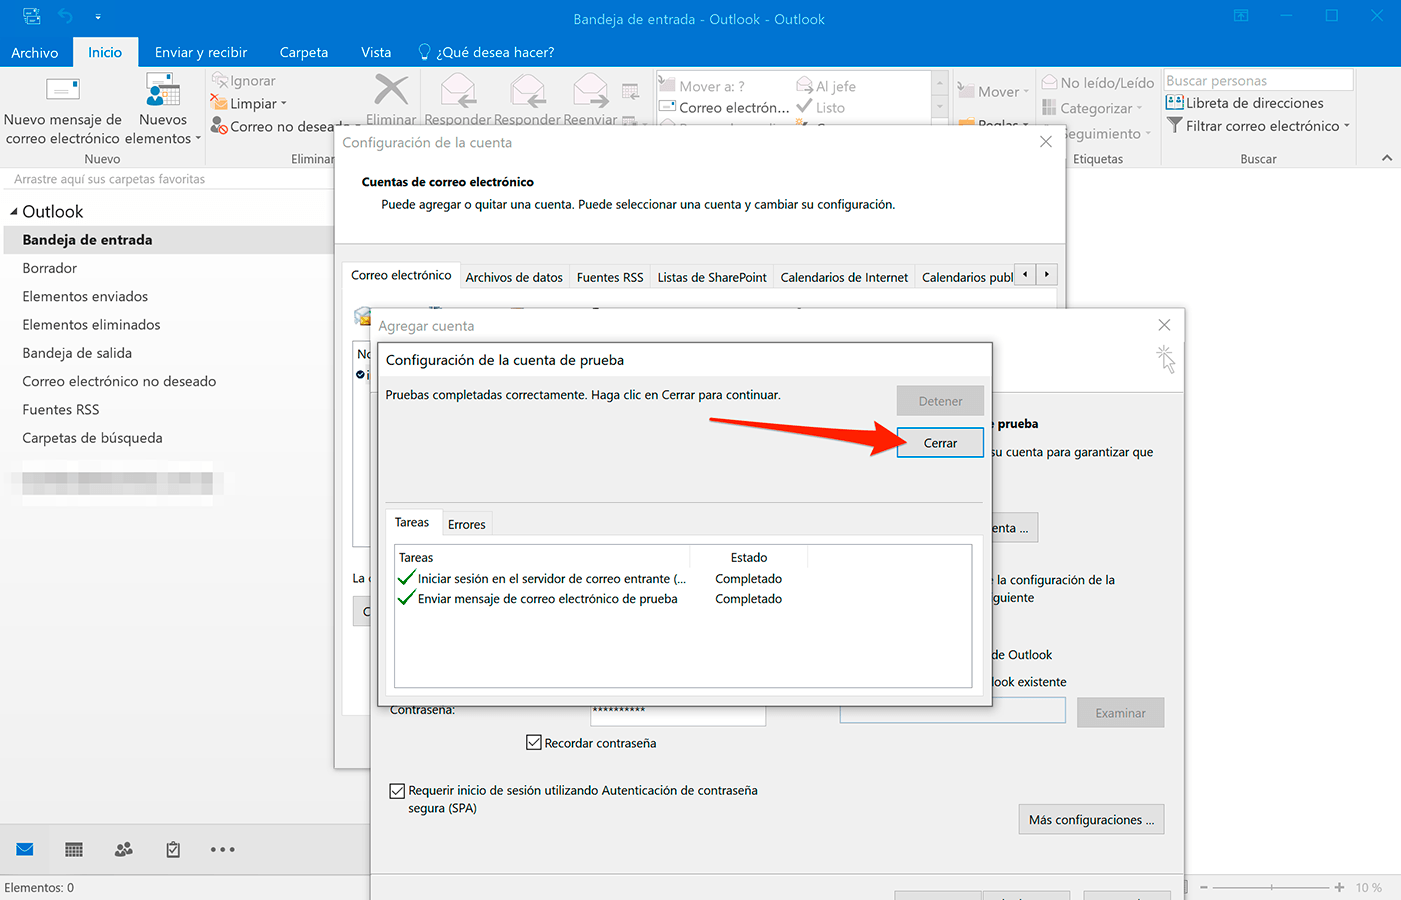 Outlook 2016 en Windows 10: Prueba de la Configuraci贸n de la cuenta